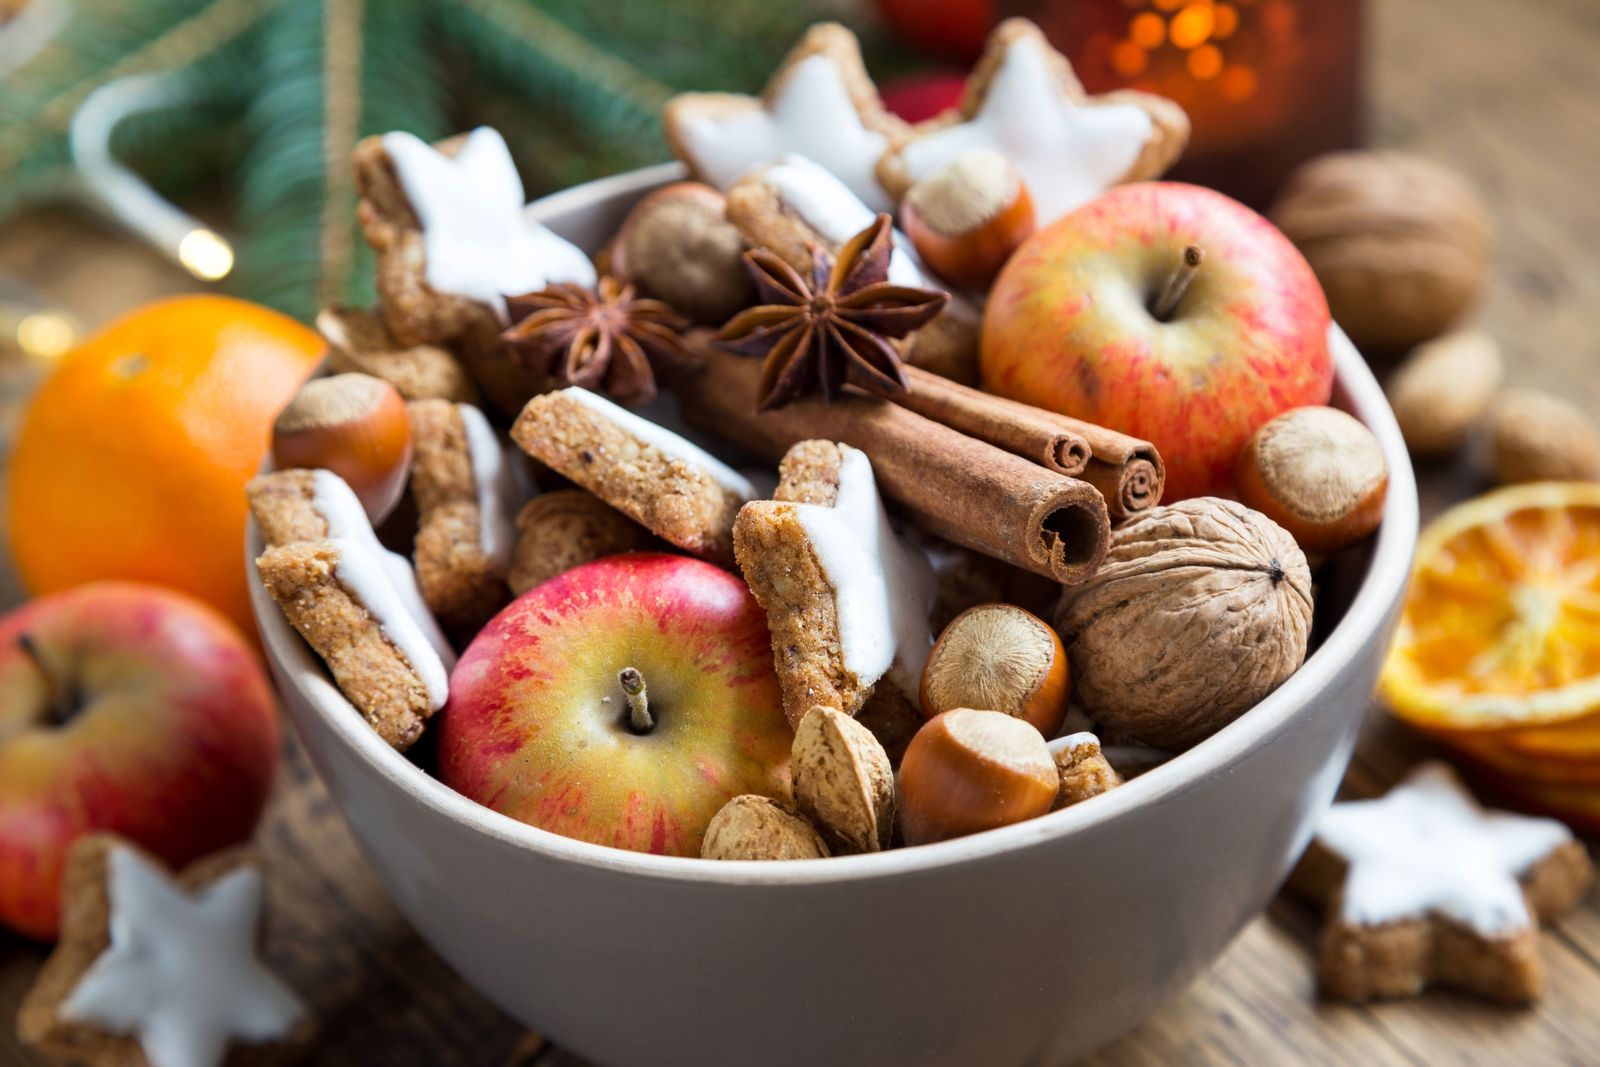 Ein Schale mit Zimtsternen, Äpfeln und anderen weihnachtlichen Dingen auf einem Holztisch.